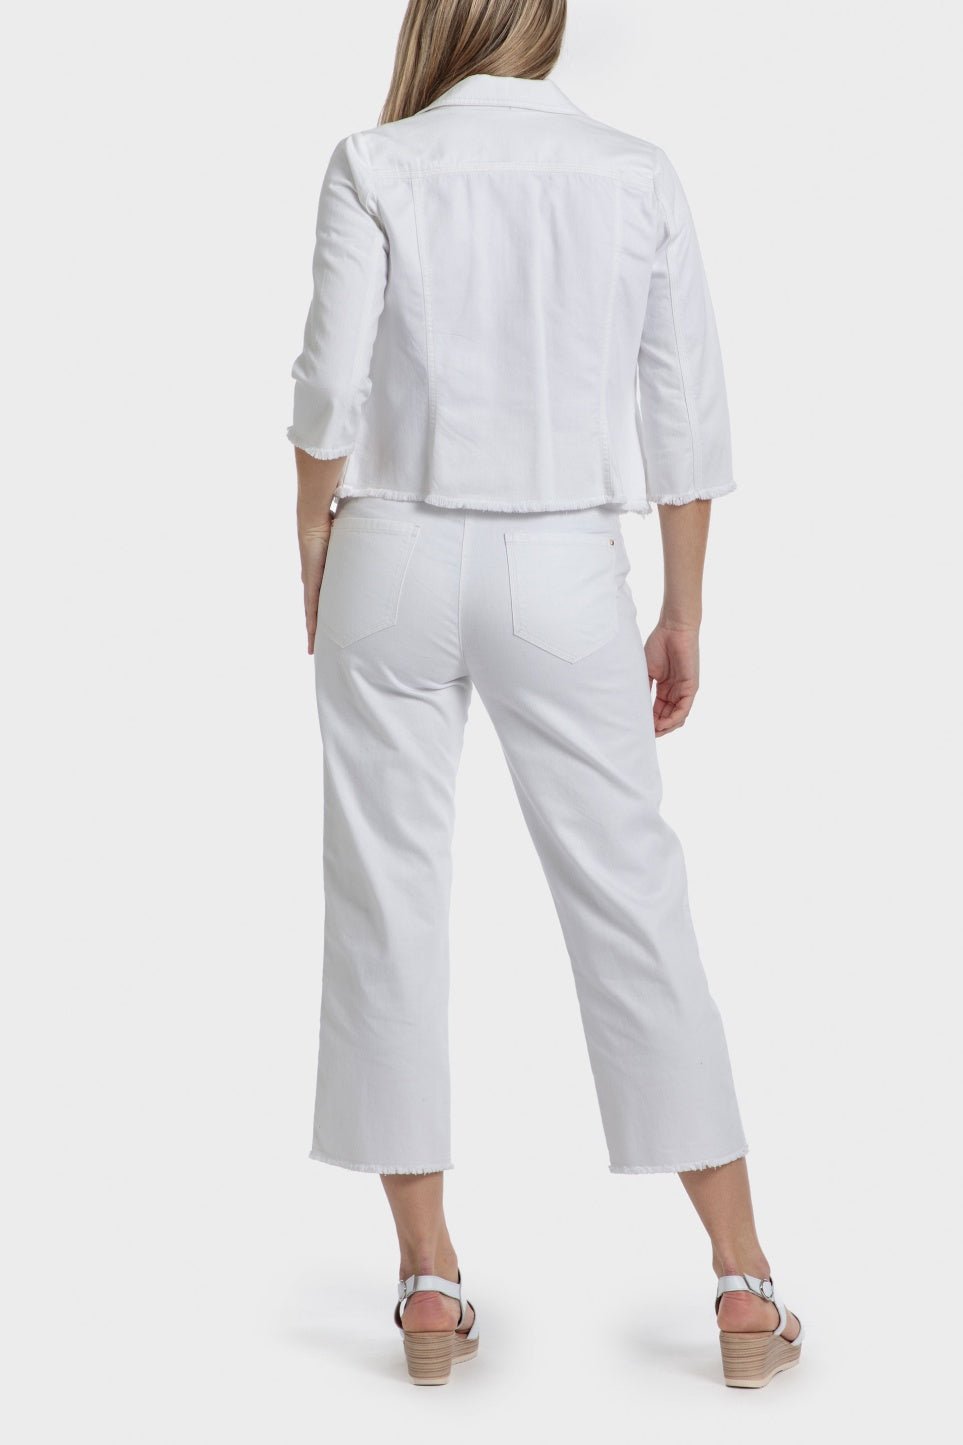 PUNT ROMA - ג'ינס גזרה גבוהה בצבע לבן - MASHBIR//365